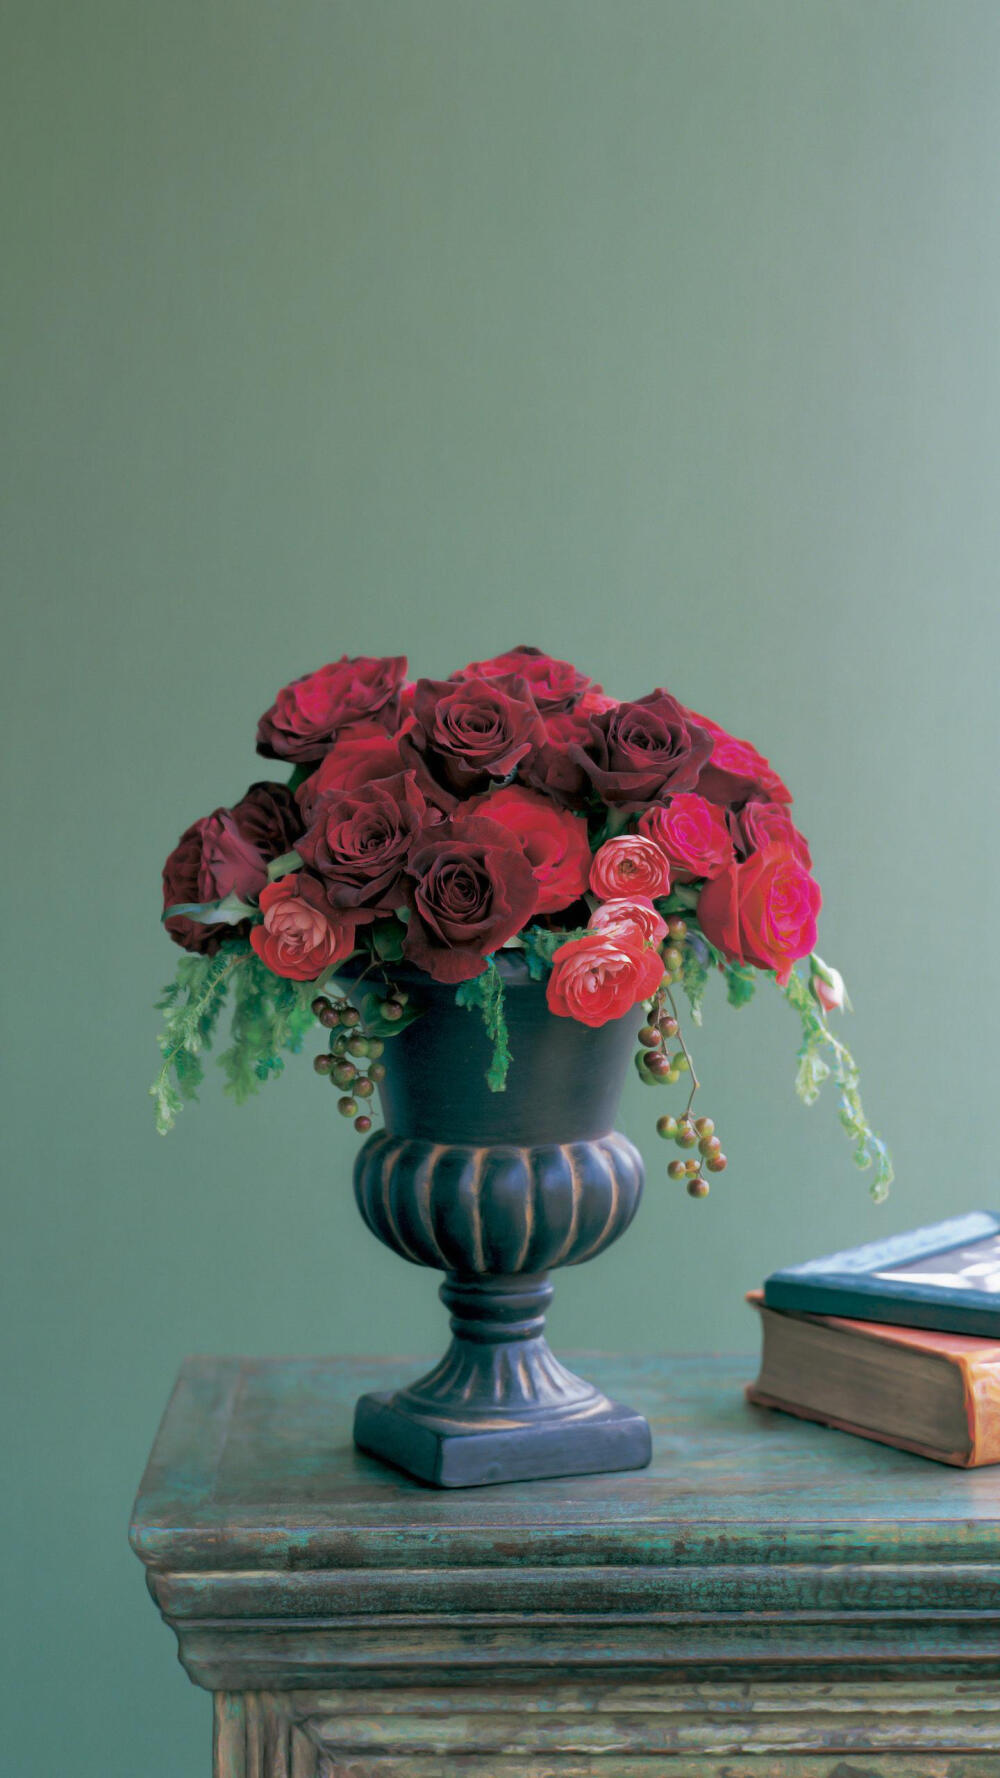 桌面插花 复古 红玫瑰